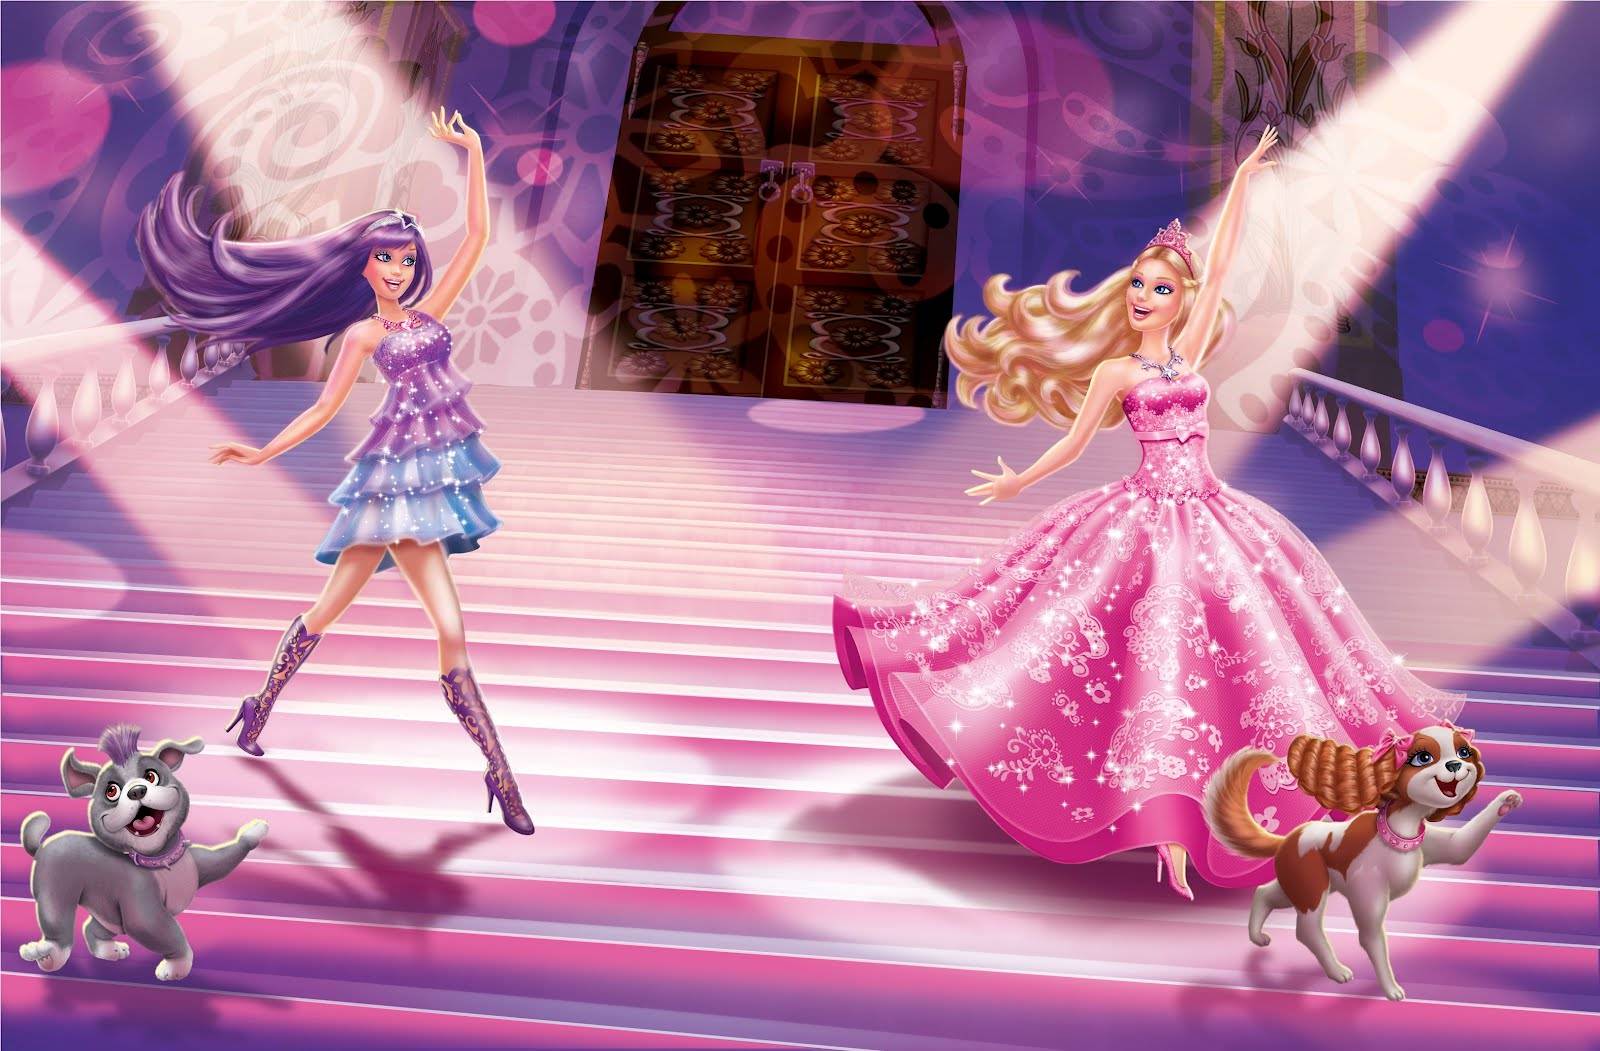 Barbie Desktop Wallpaper